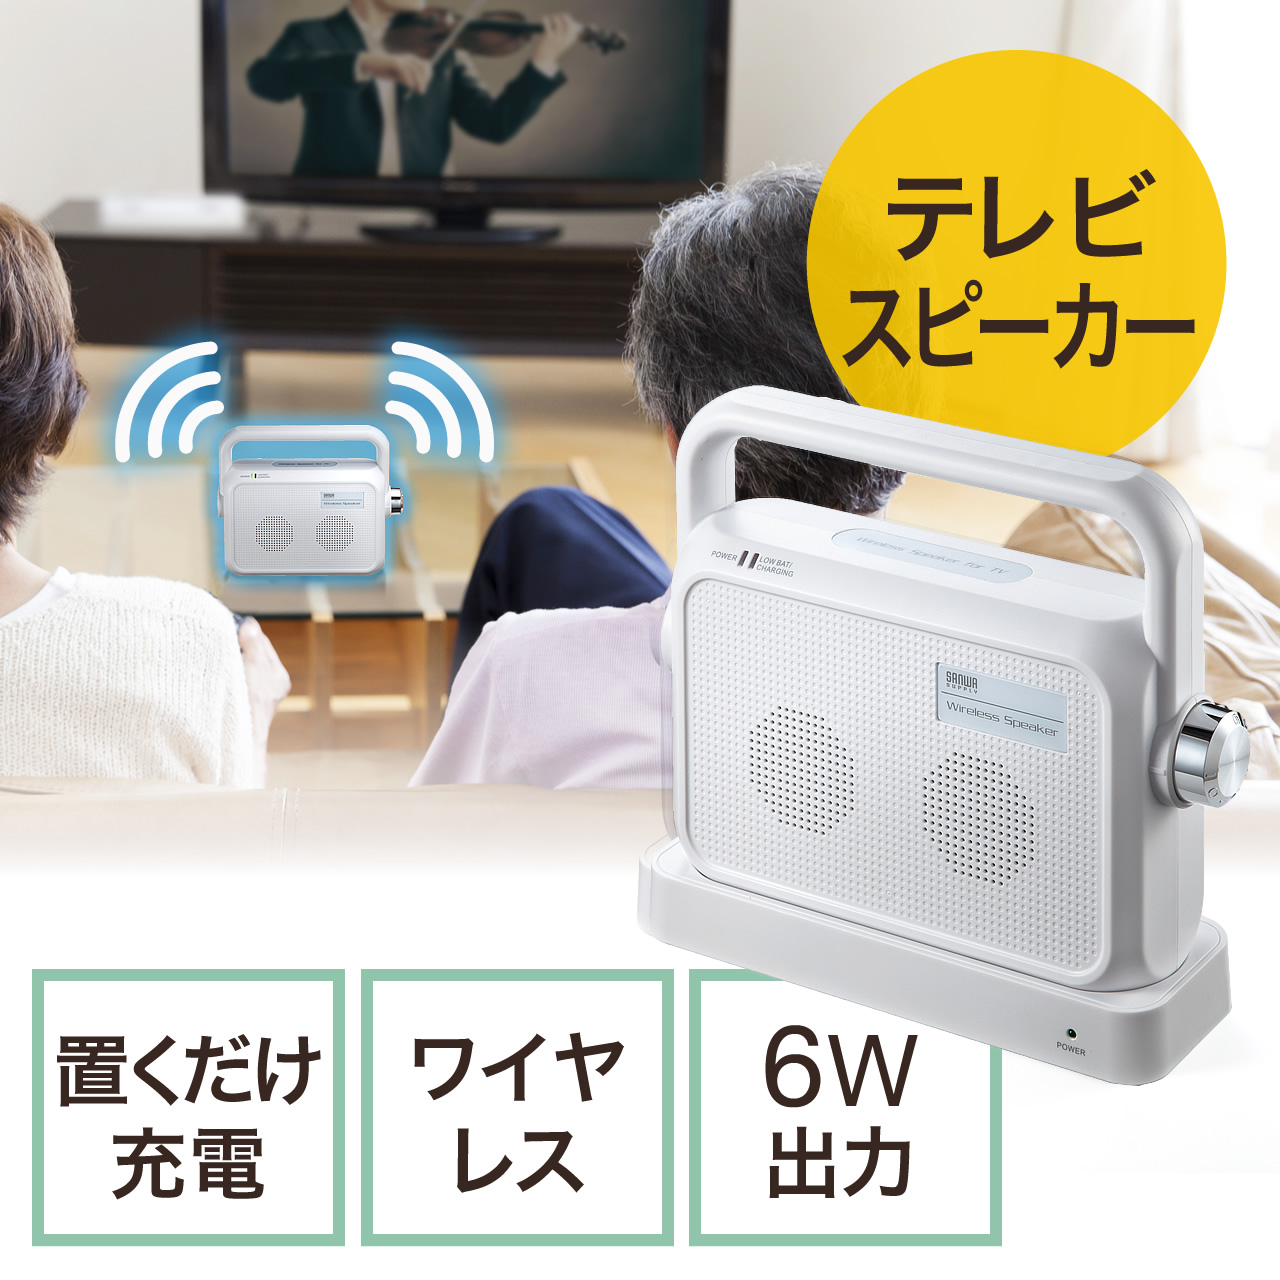 テレビ用ワイヤレススピーカー(手元スピーカー・コードレス